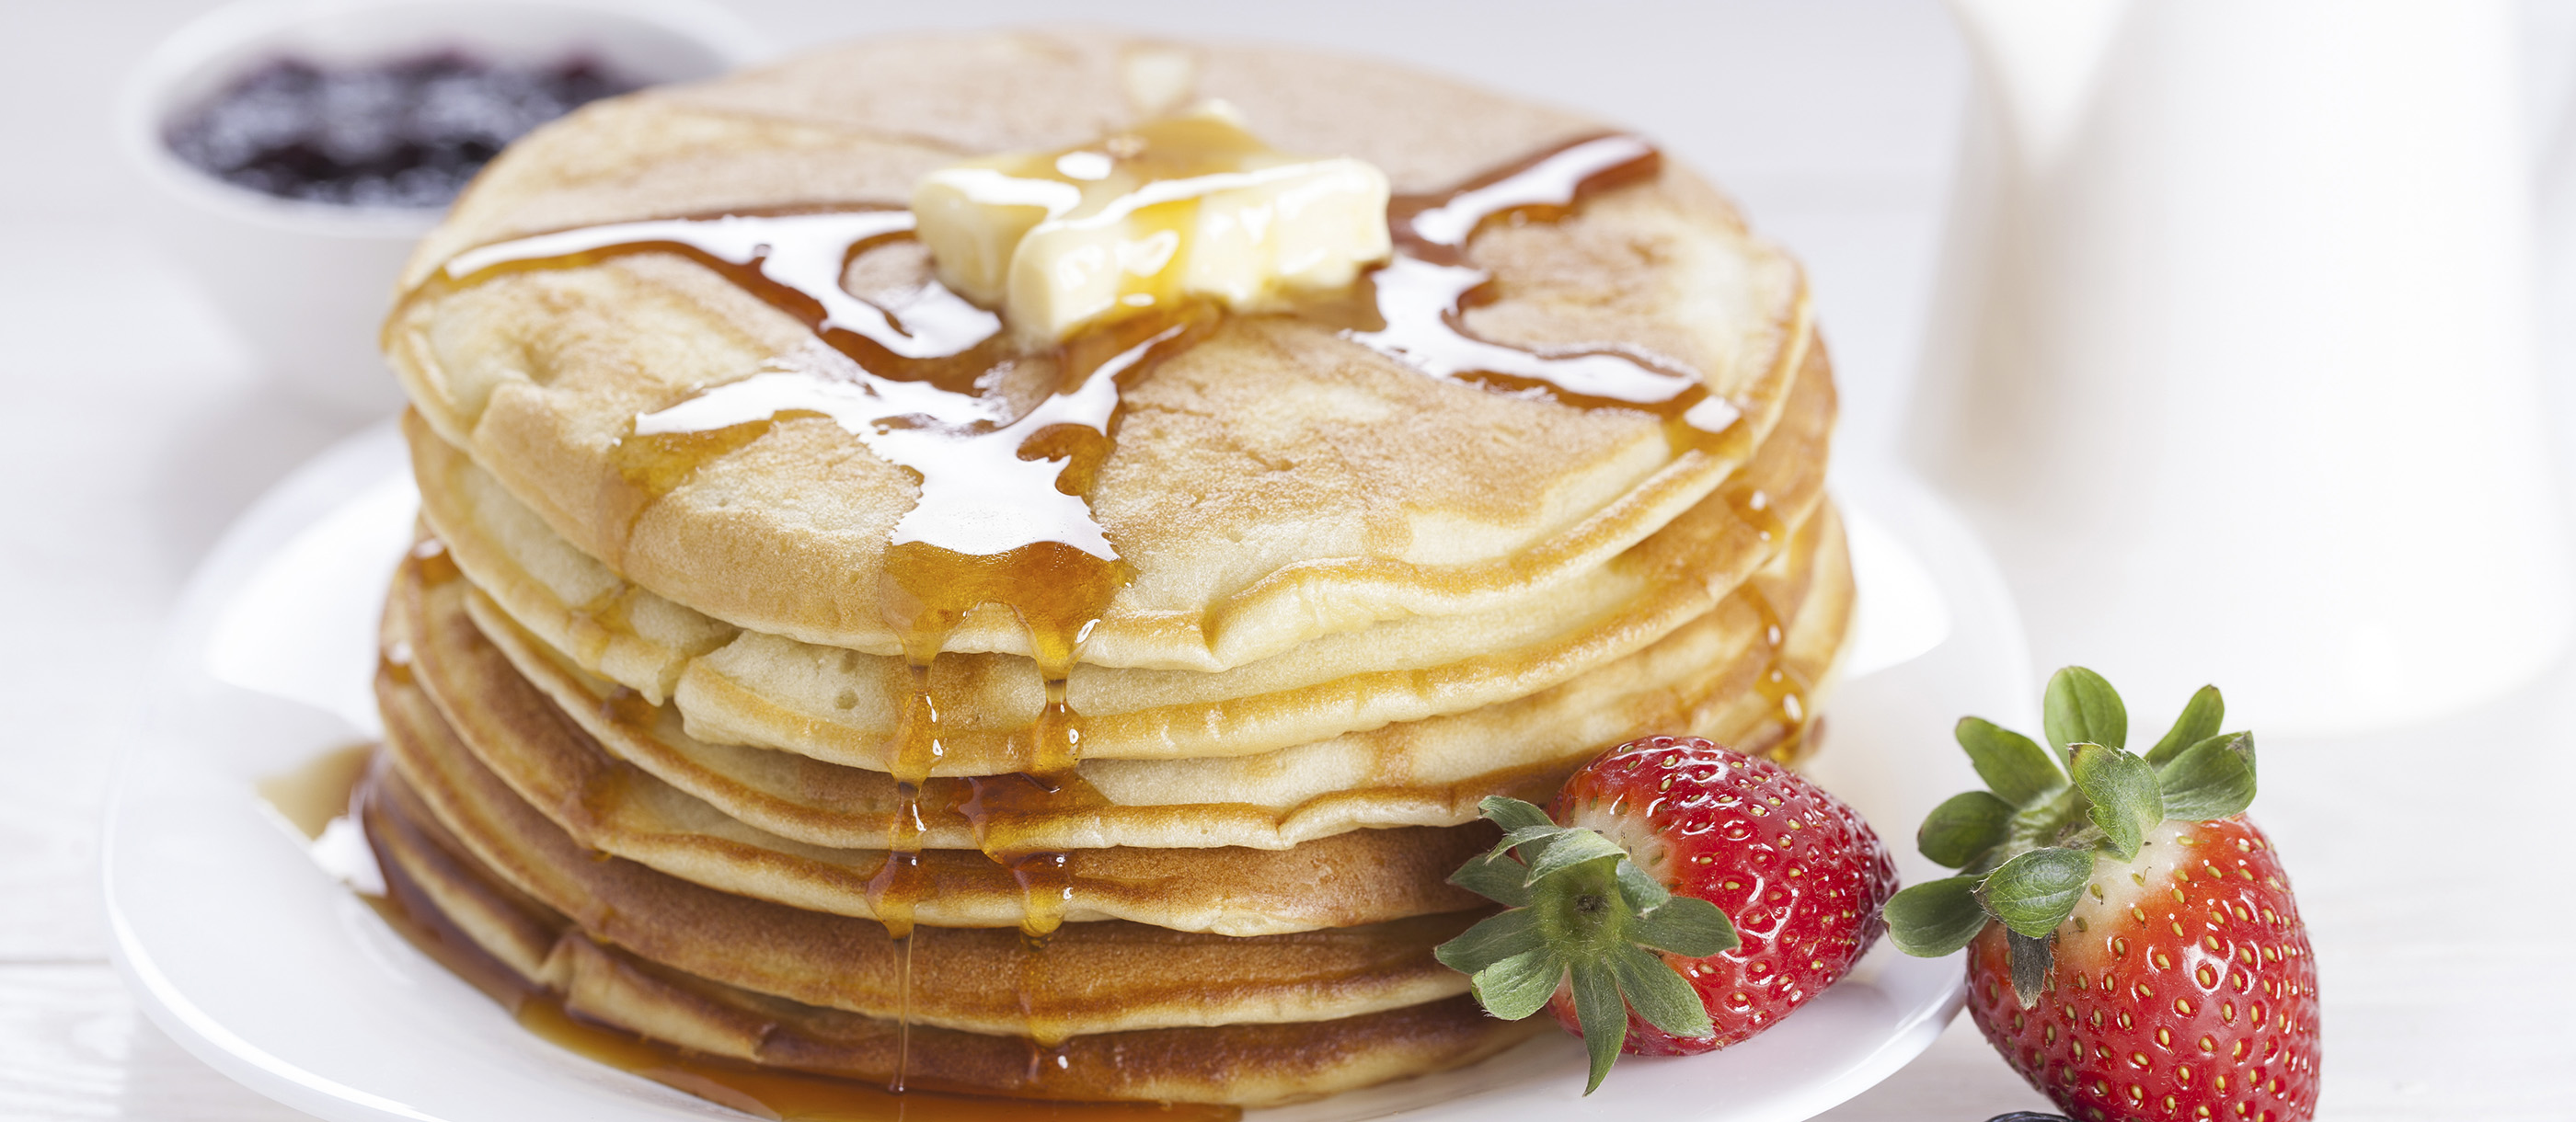 American Pancakes Authentic Recipe | TasteAtlas